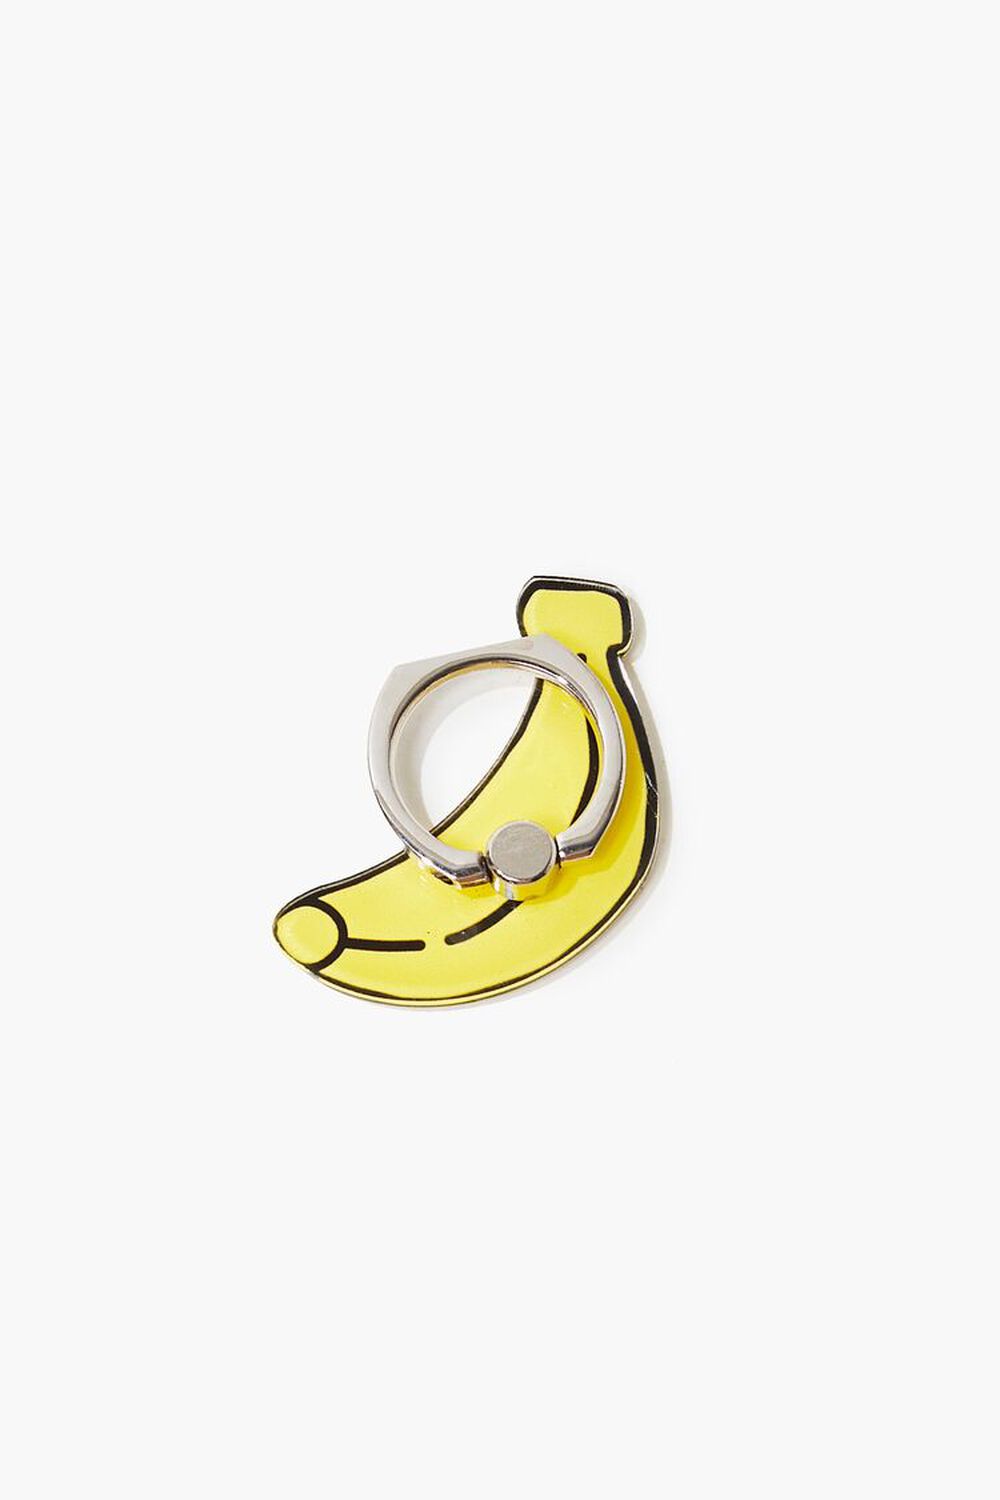 YELLOW Banana Graphic Phone Ring, image 1